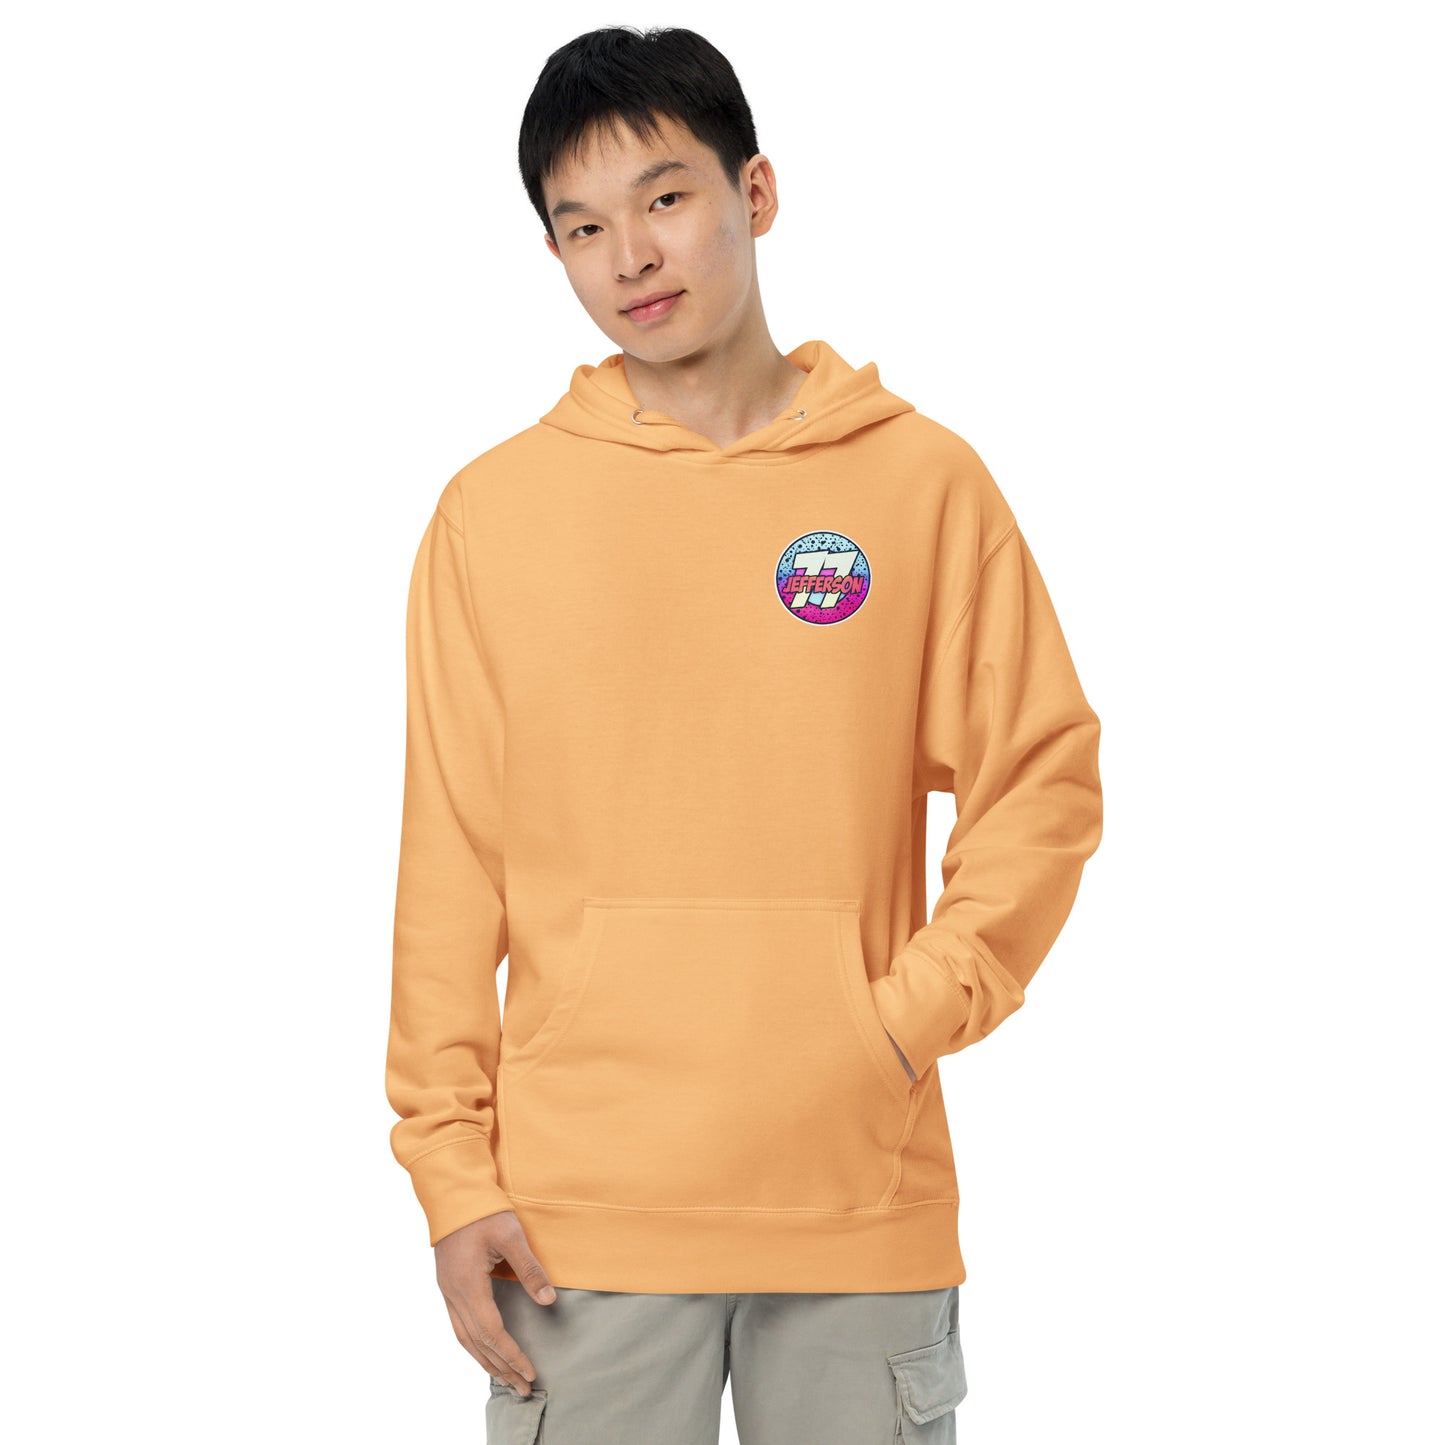 Neon - 77J - Unisex midweight hoodie